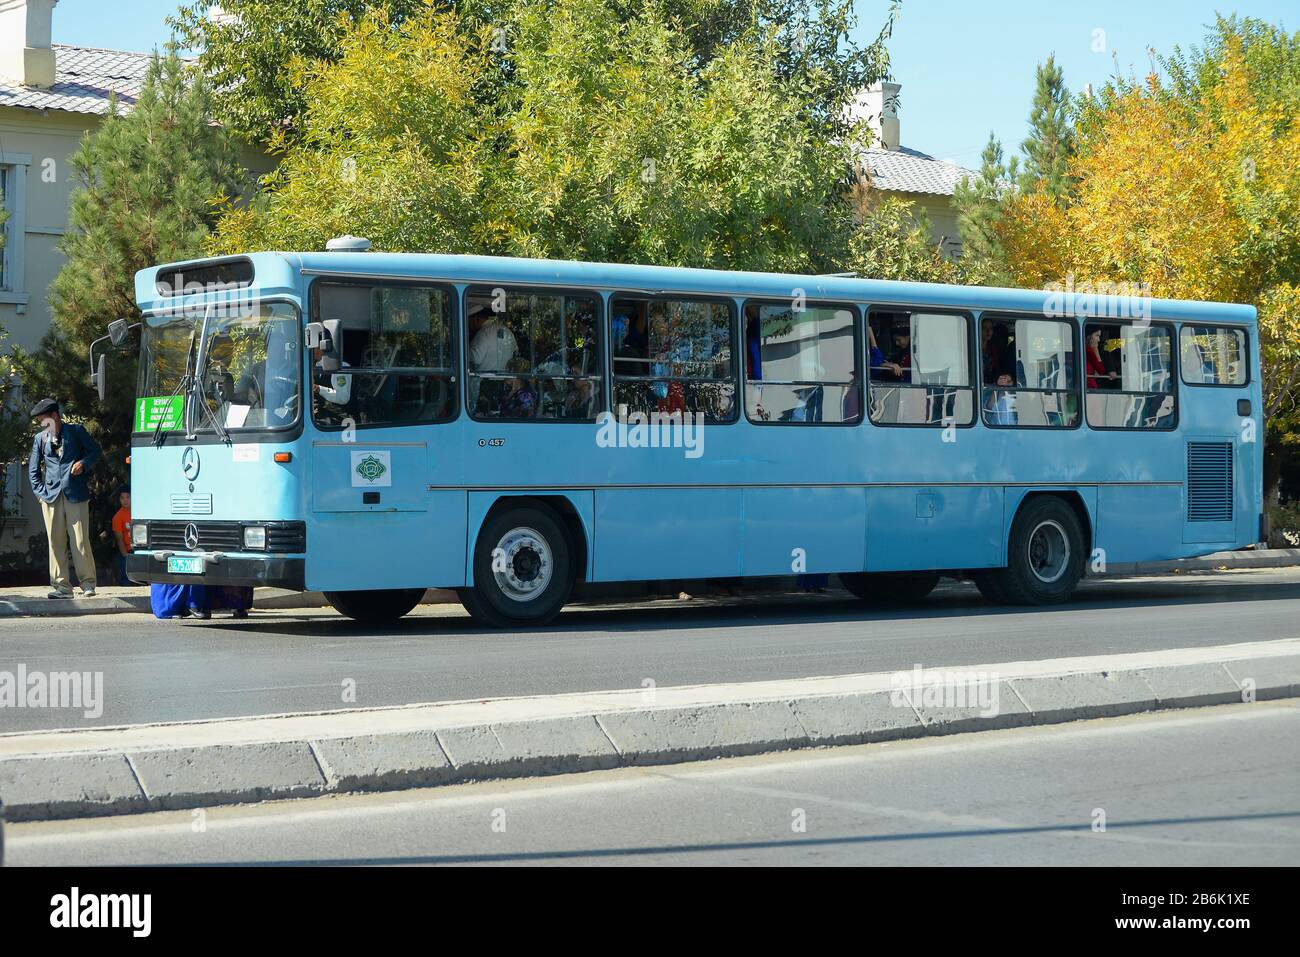 Autobus di trasporto pubblico con i turkmen locali n Kunya Urgench, Turkmenistan. Autobus azzurro alimentato da Mercedes Benz. Foto Stock